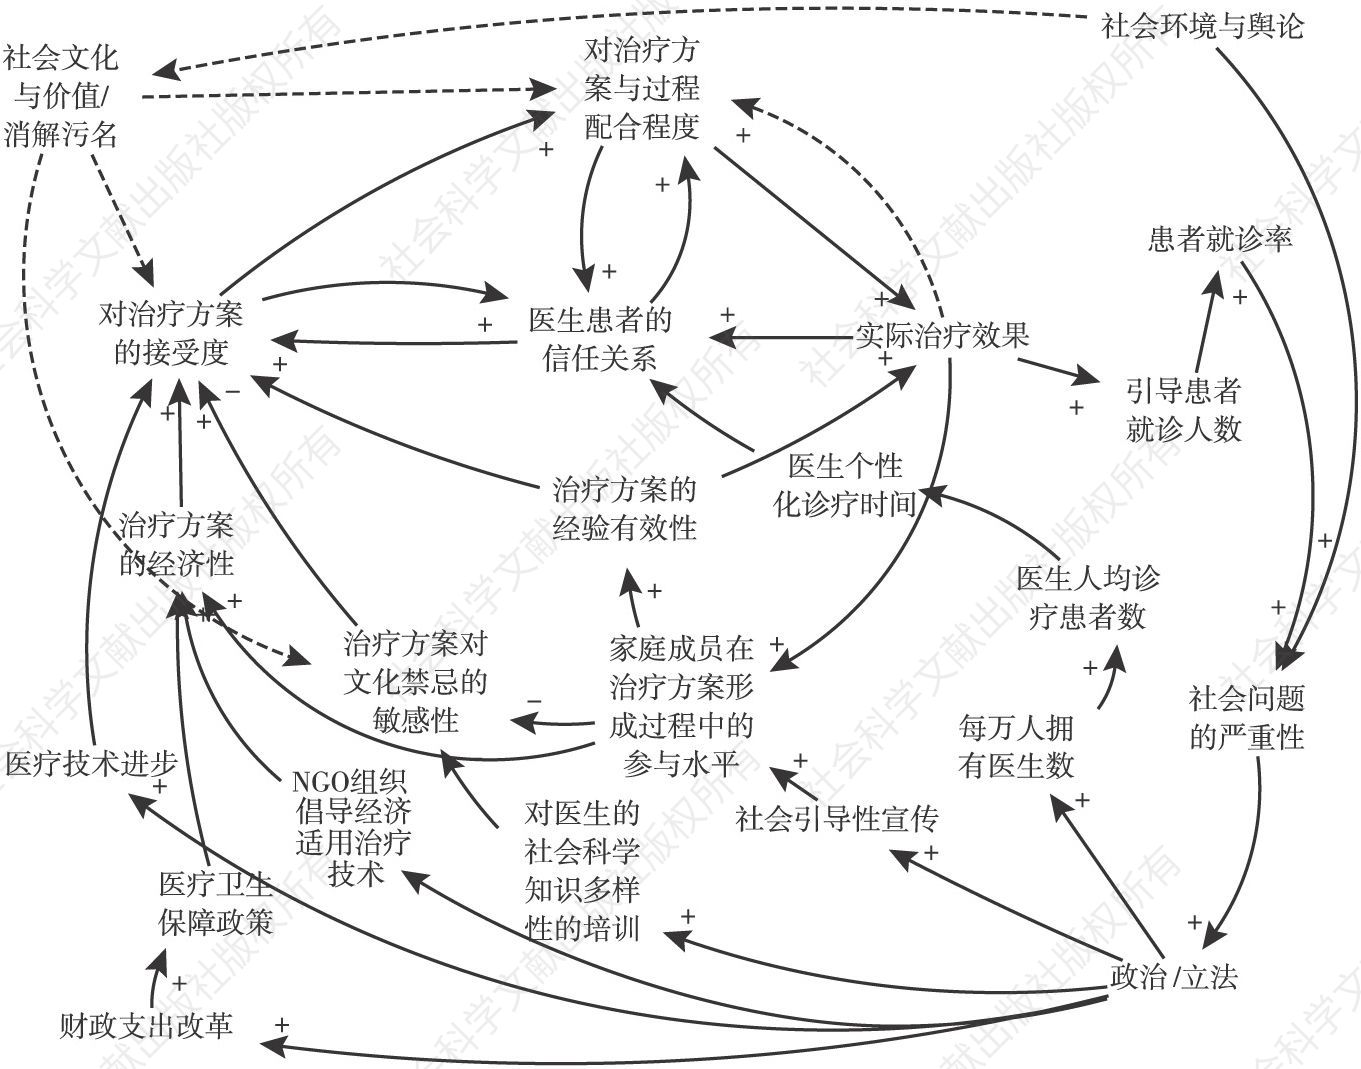 图11-3 政治、经济与社会文化背景下的医患关系模式的系统动力学模型